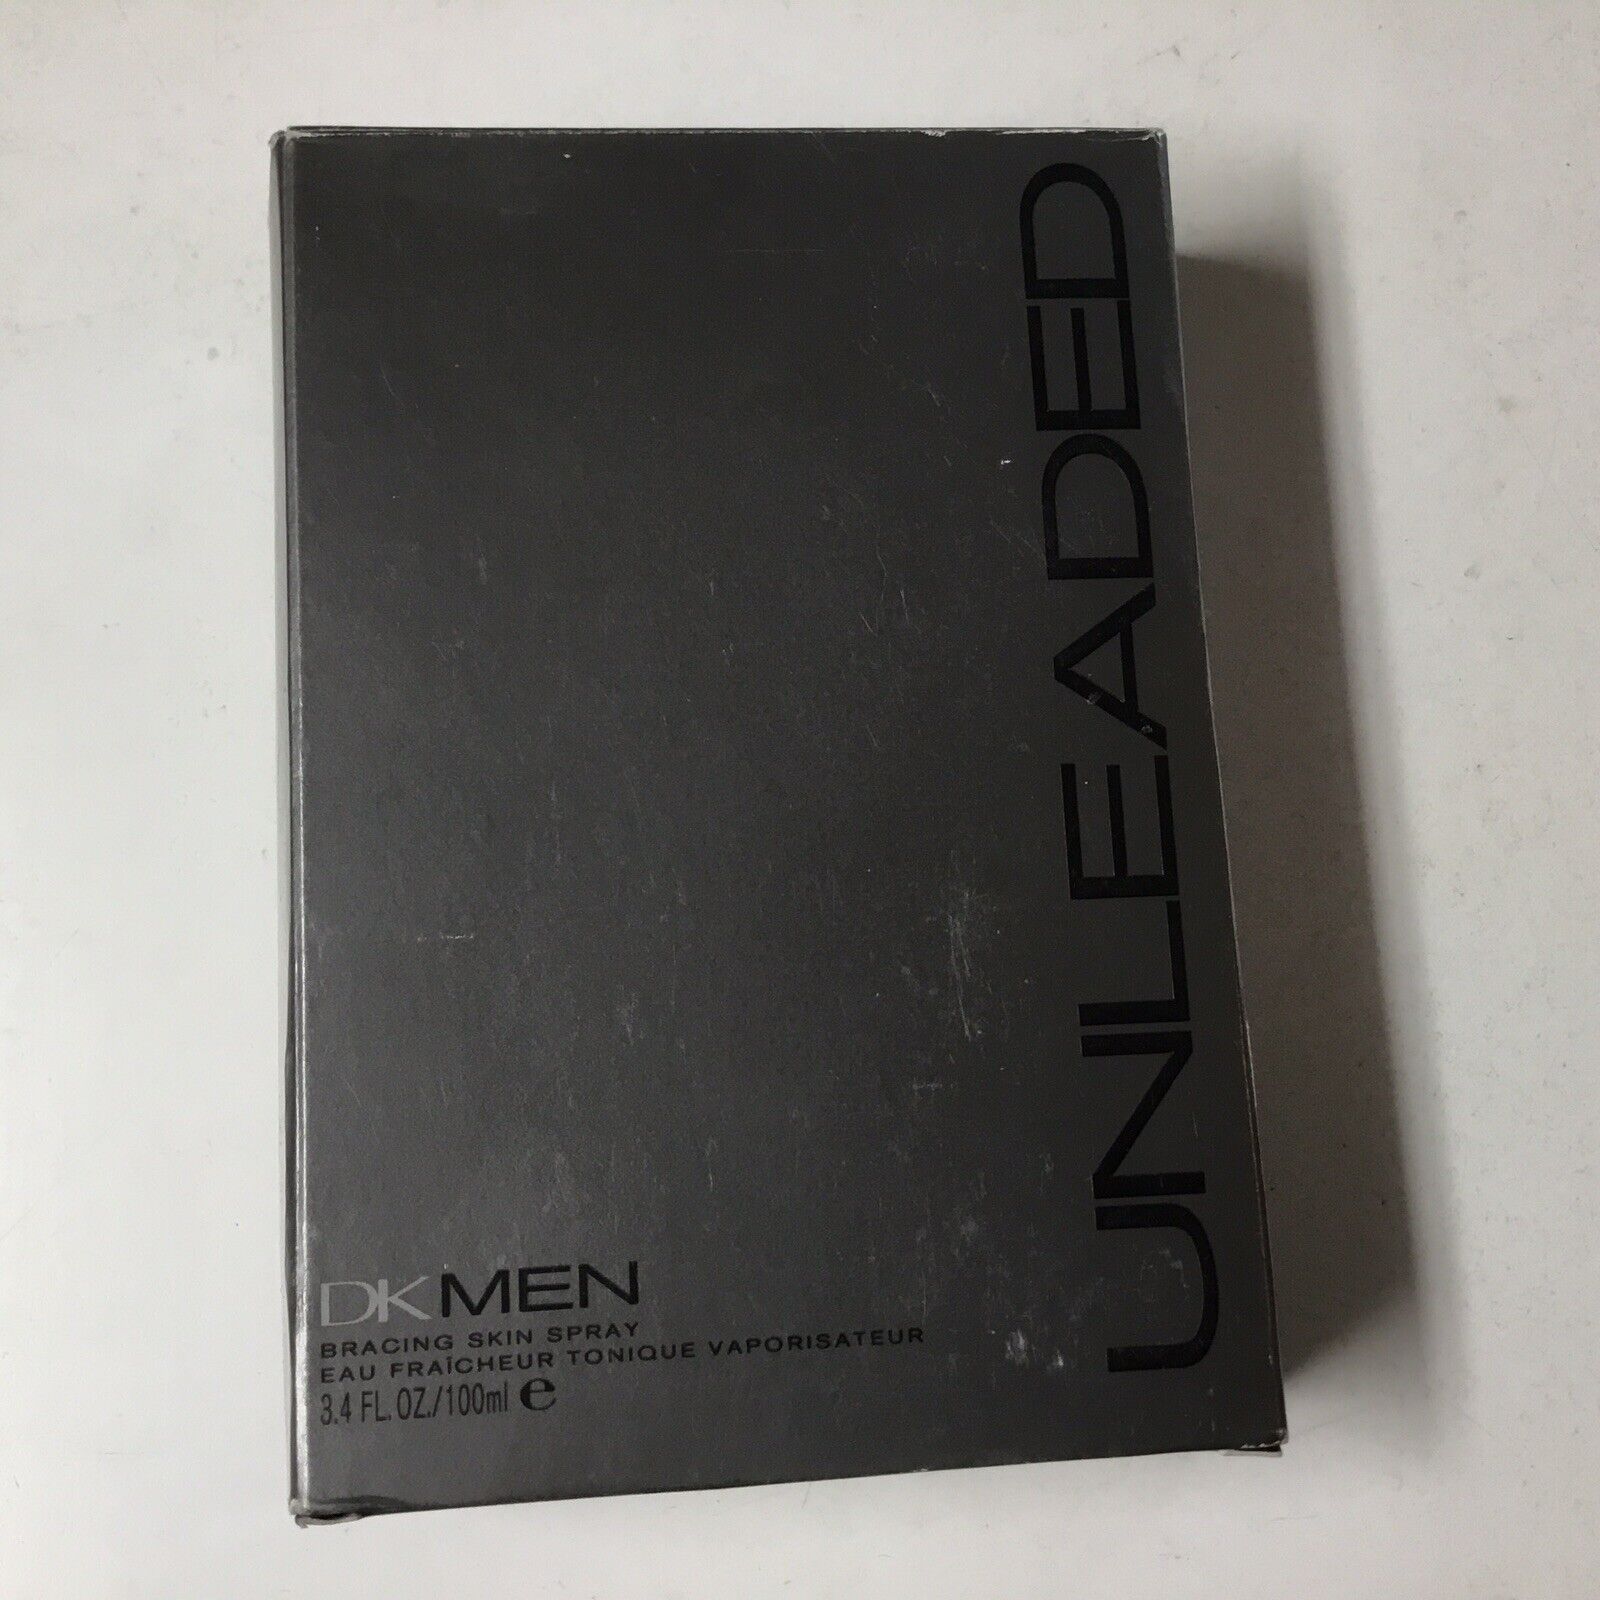 VINTAGE DK MEN FUEL Unleaded men’s cologne spray 3.4 oz in Box